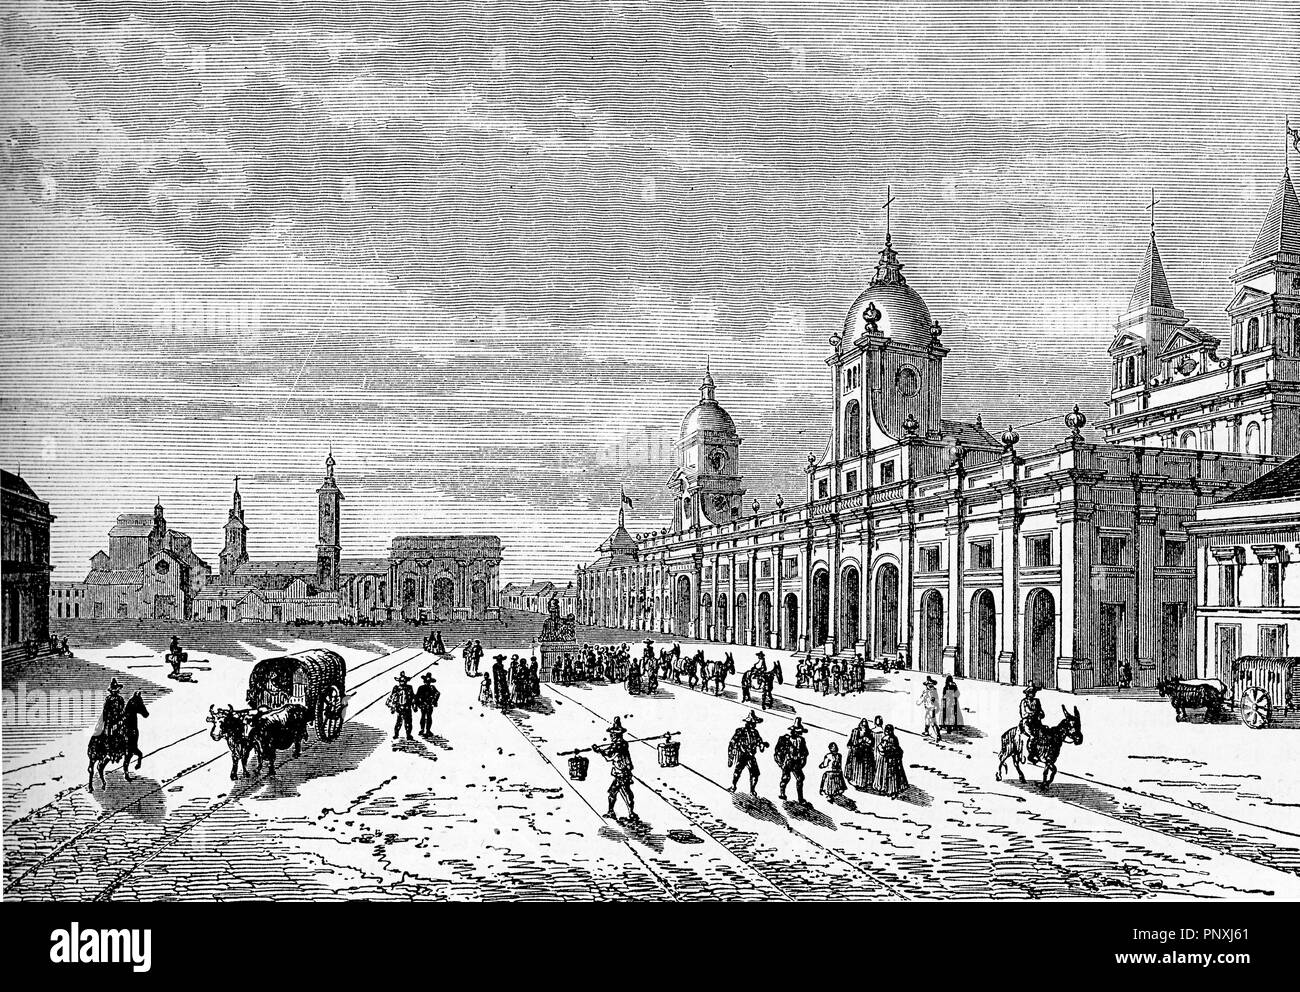 Santiago del Cile - Plaza de las Armas, la piazza principale della città con edifici storici e il palazzo del governo, incisione vintage Foto Stock